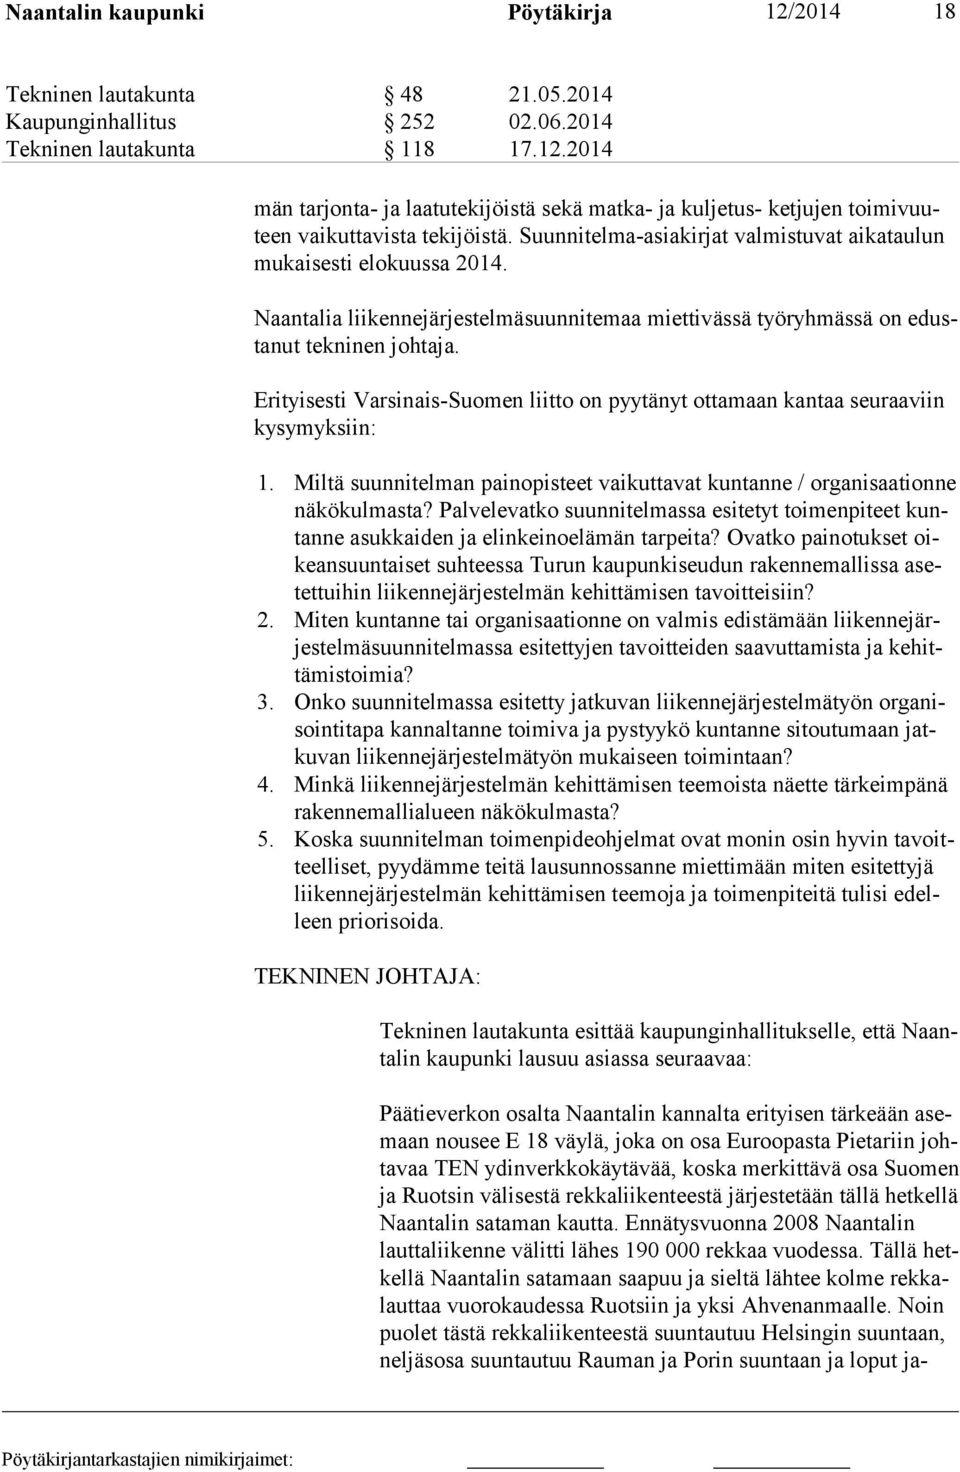 Erityisesti Varsinais-Suomen liitto on pyytänyt ottamaan kantaa seuraaviin kysymyksiin: 1. Miltä suunnitelman painopisteet vaikuttavat kuntanne / organisaation ne näkökulmasta?